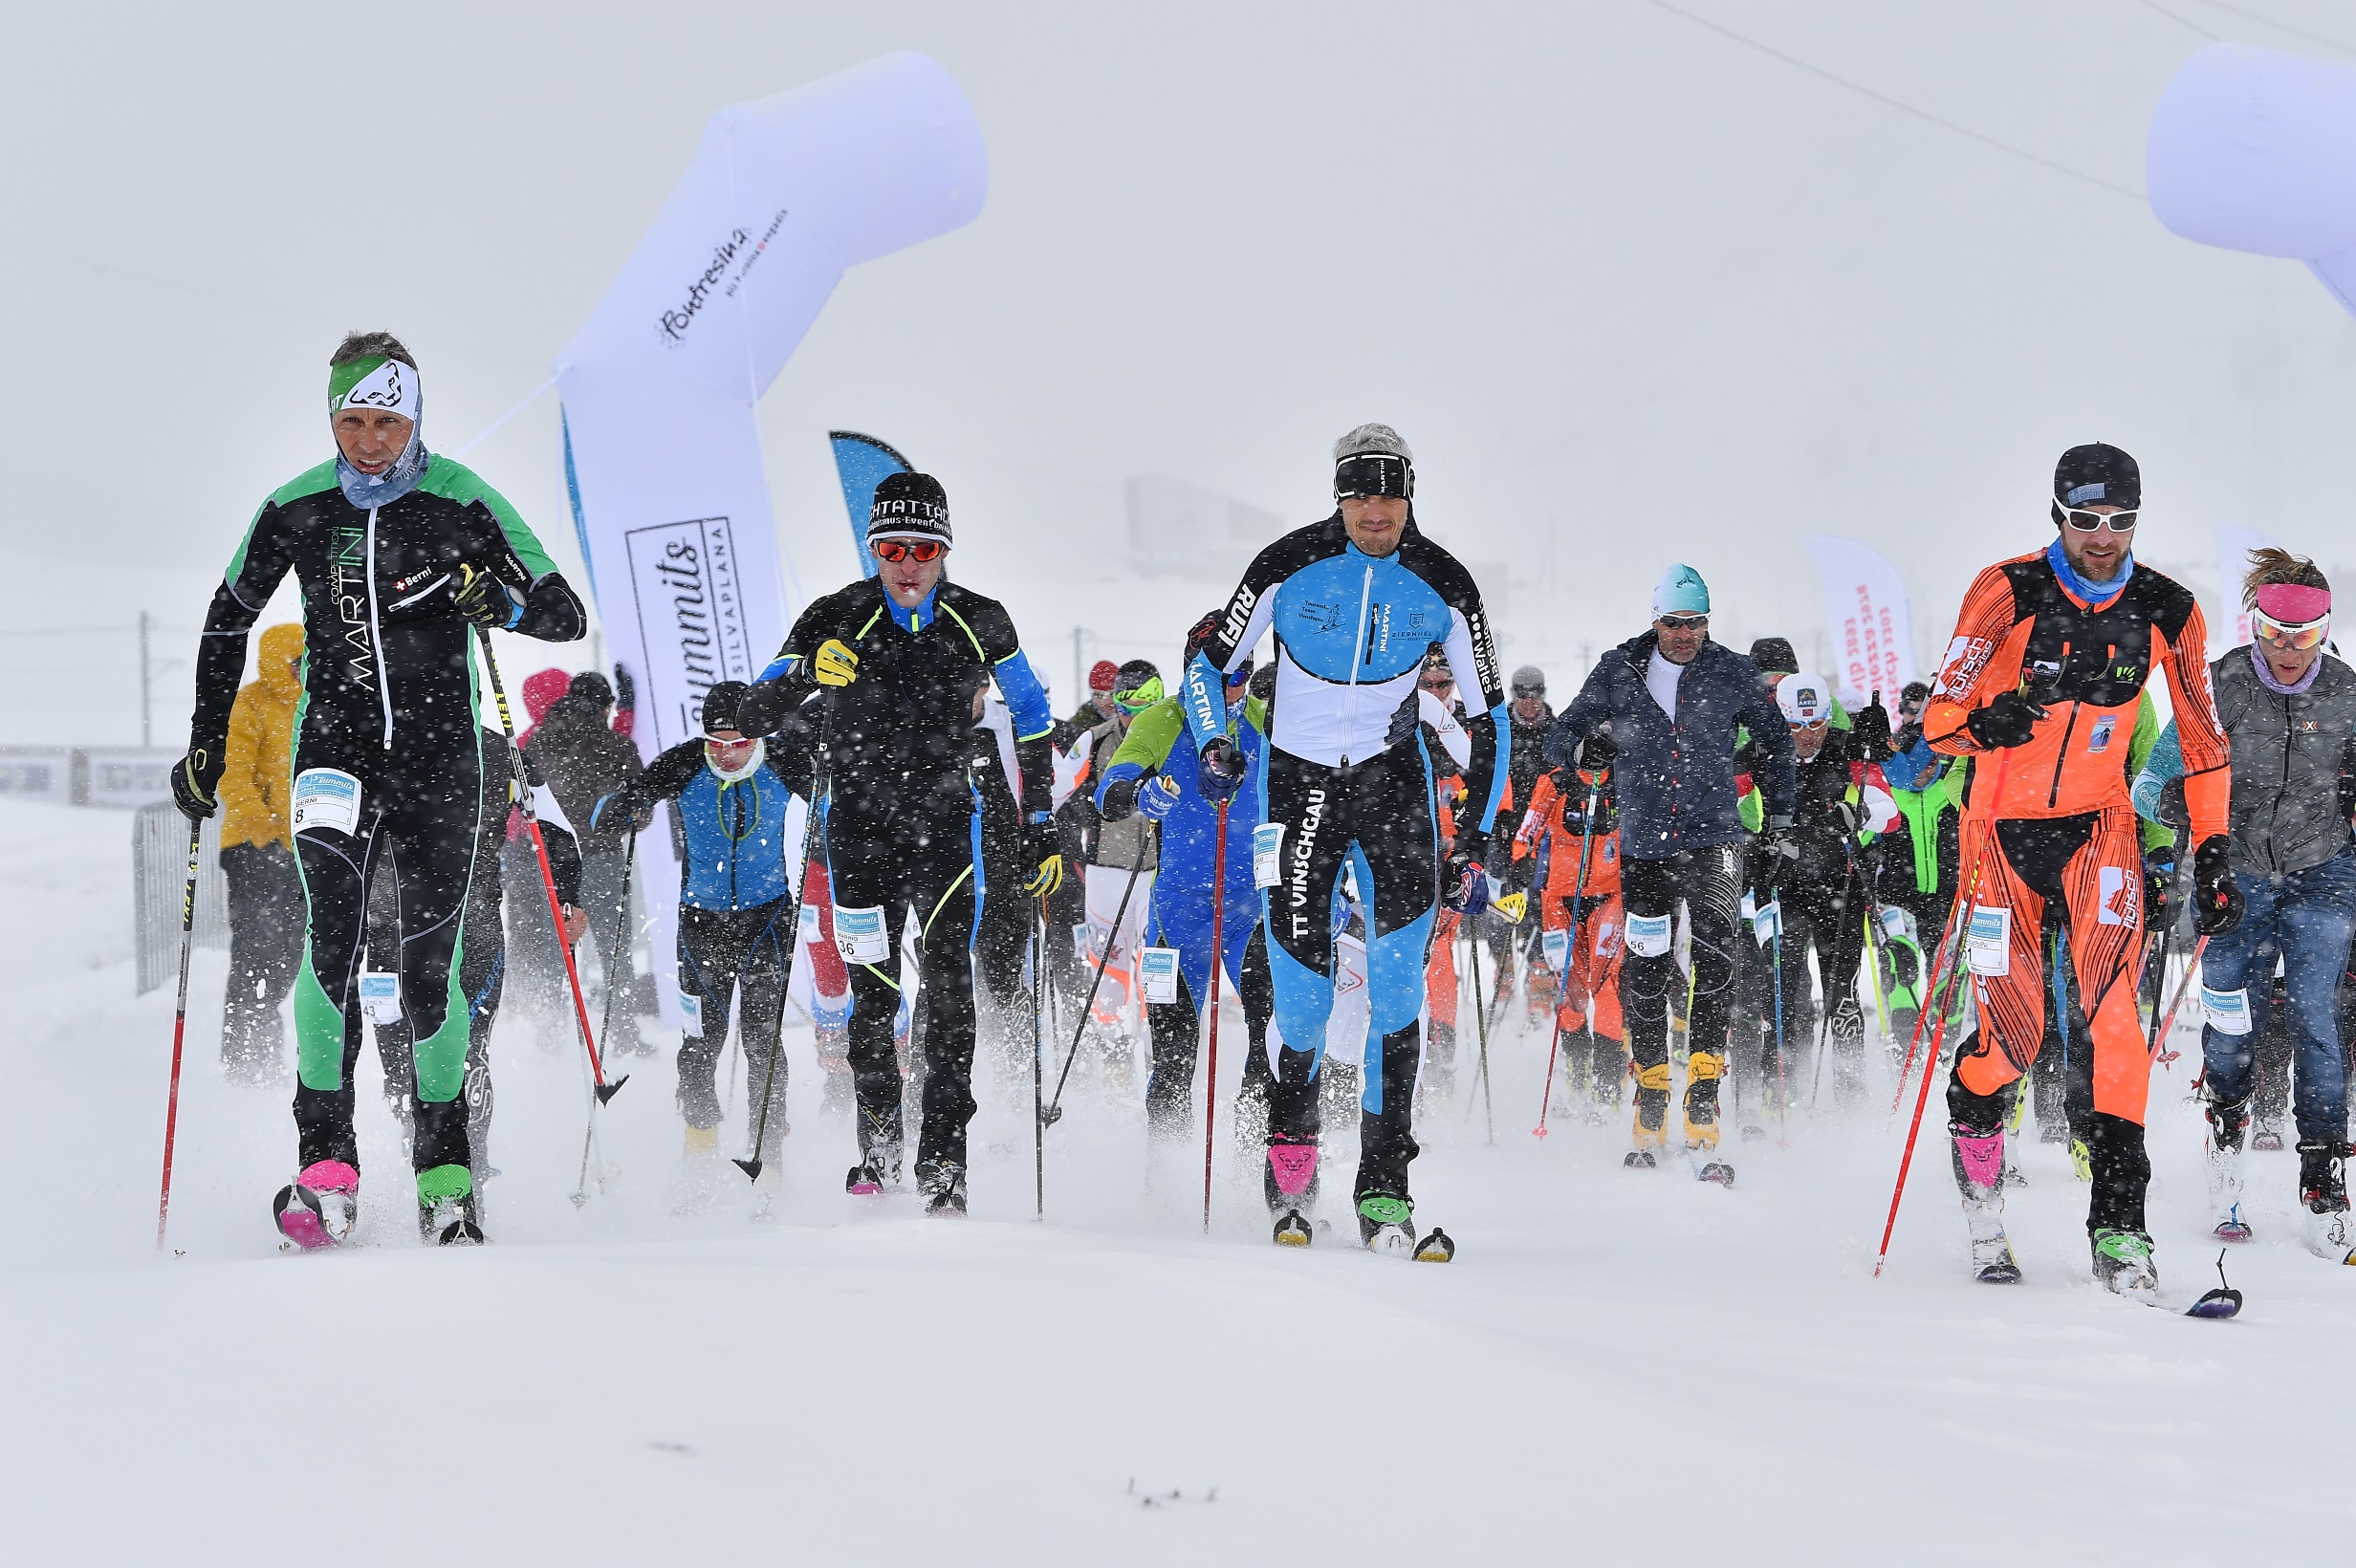 3-summits Lagalb, Skitourenrennen, Pontresina, 777 HM, 4.7 Km